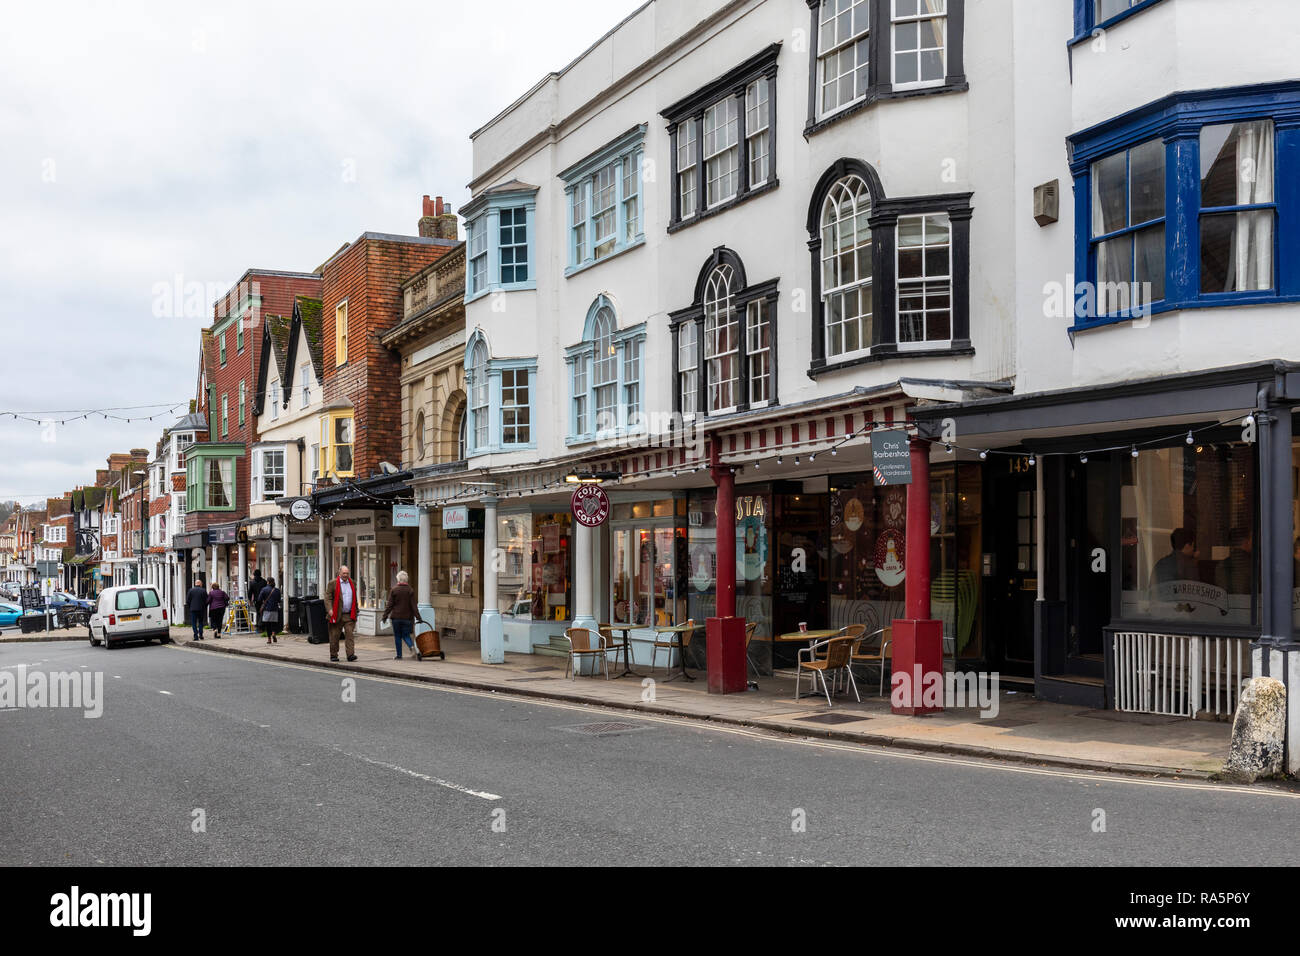 Geschäfte und farbenfrohe Architektur in der High Street von Marlborough, Wiltshire, England, Großbritannien Stockfoto